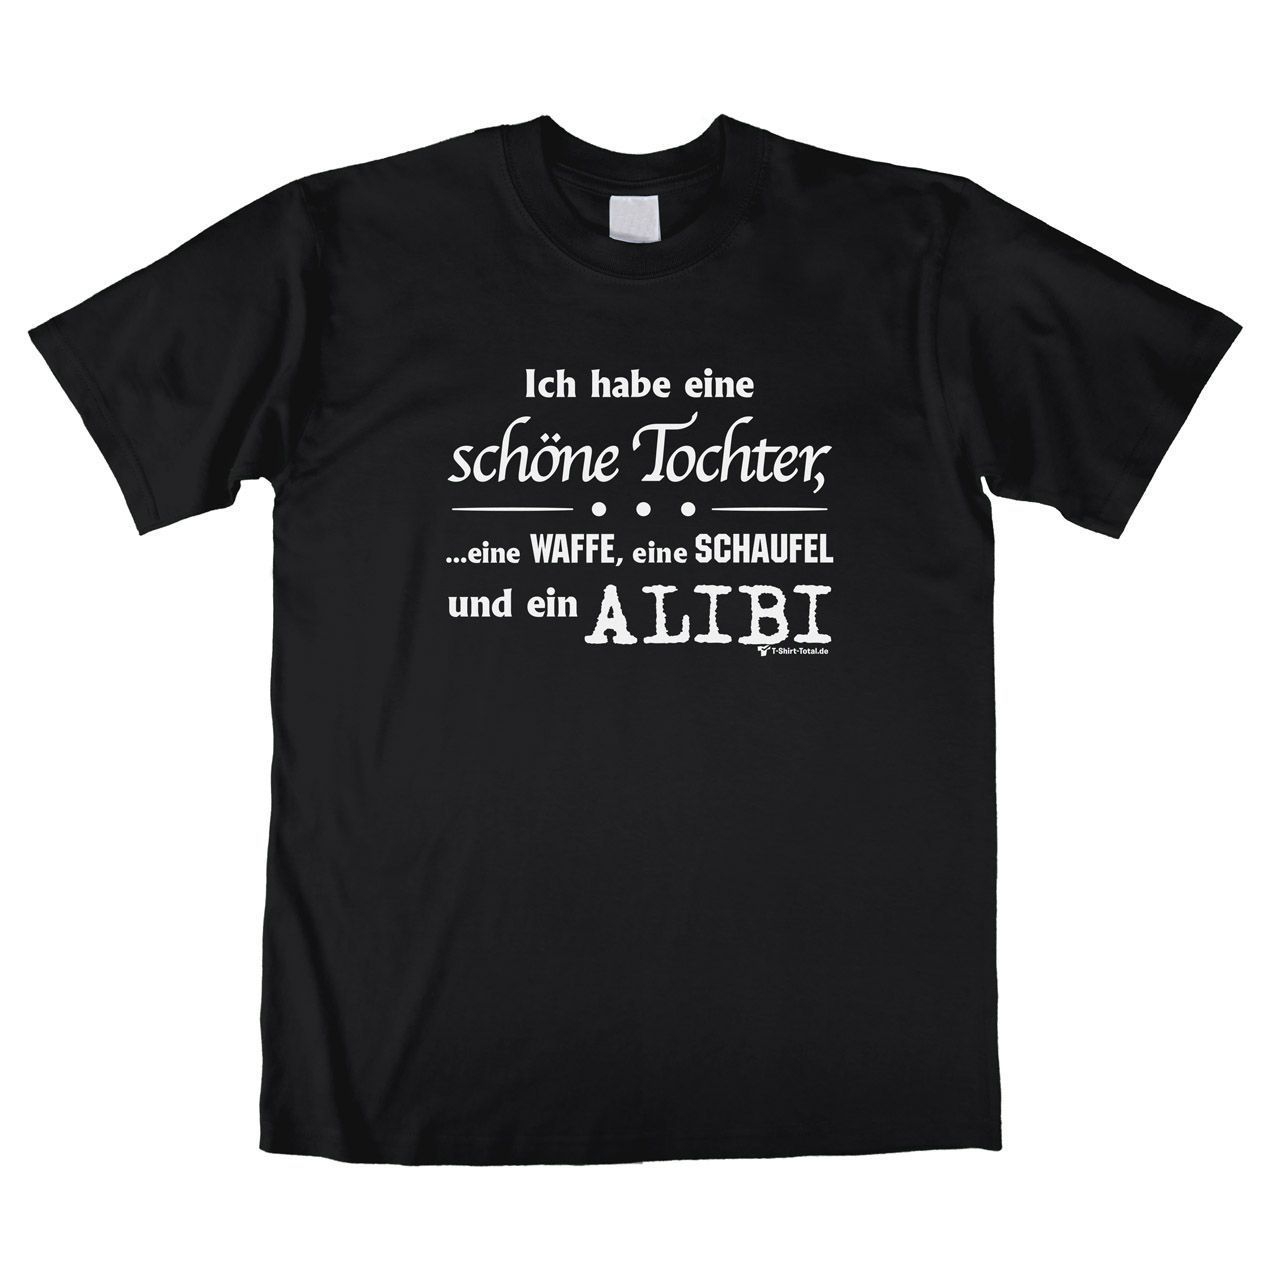 Alibi Unisex T-Shirt schwarz Large